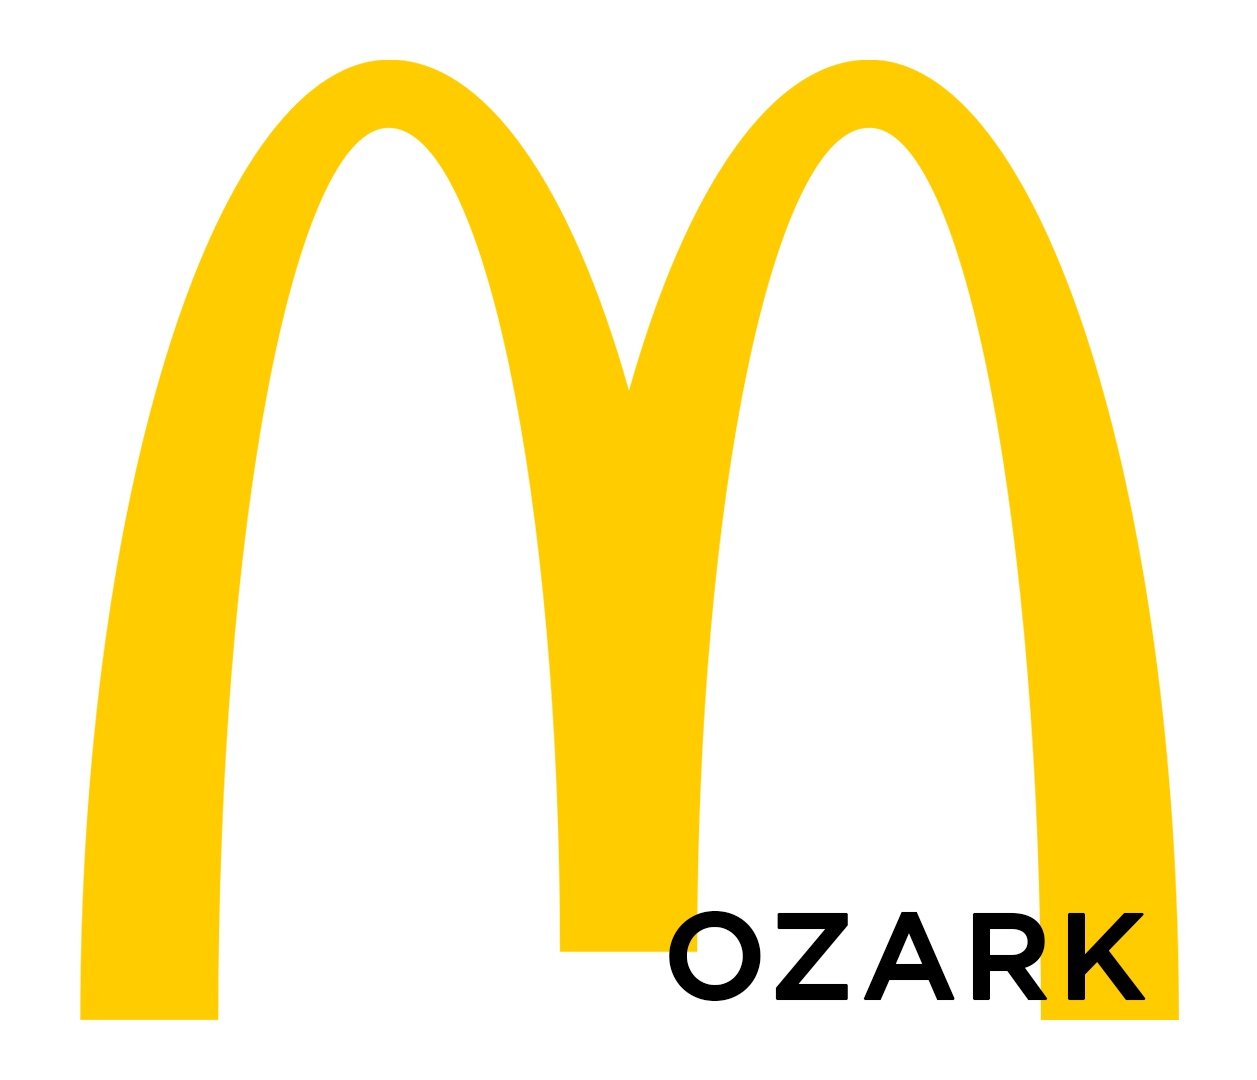 McD's Ozark